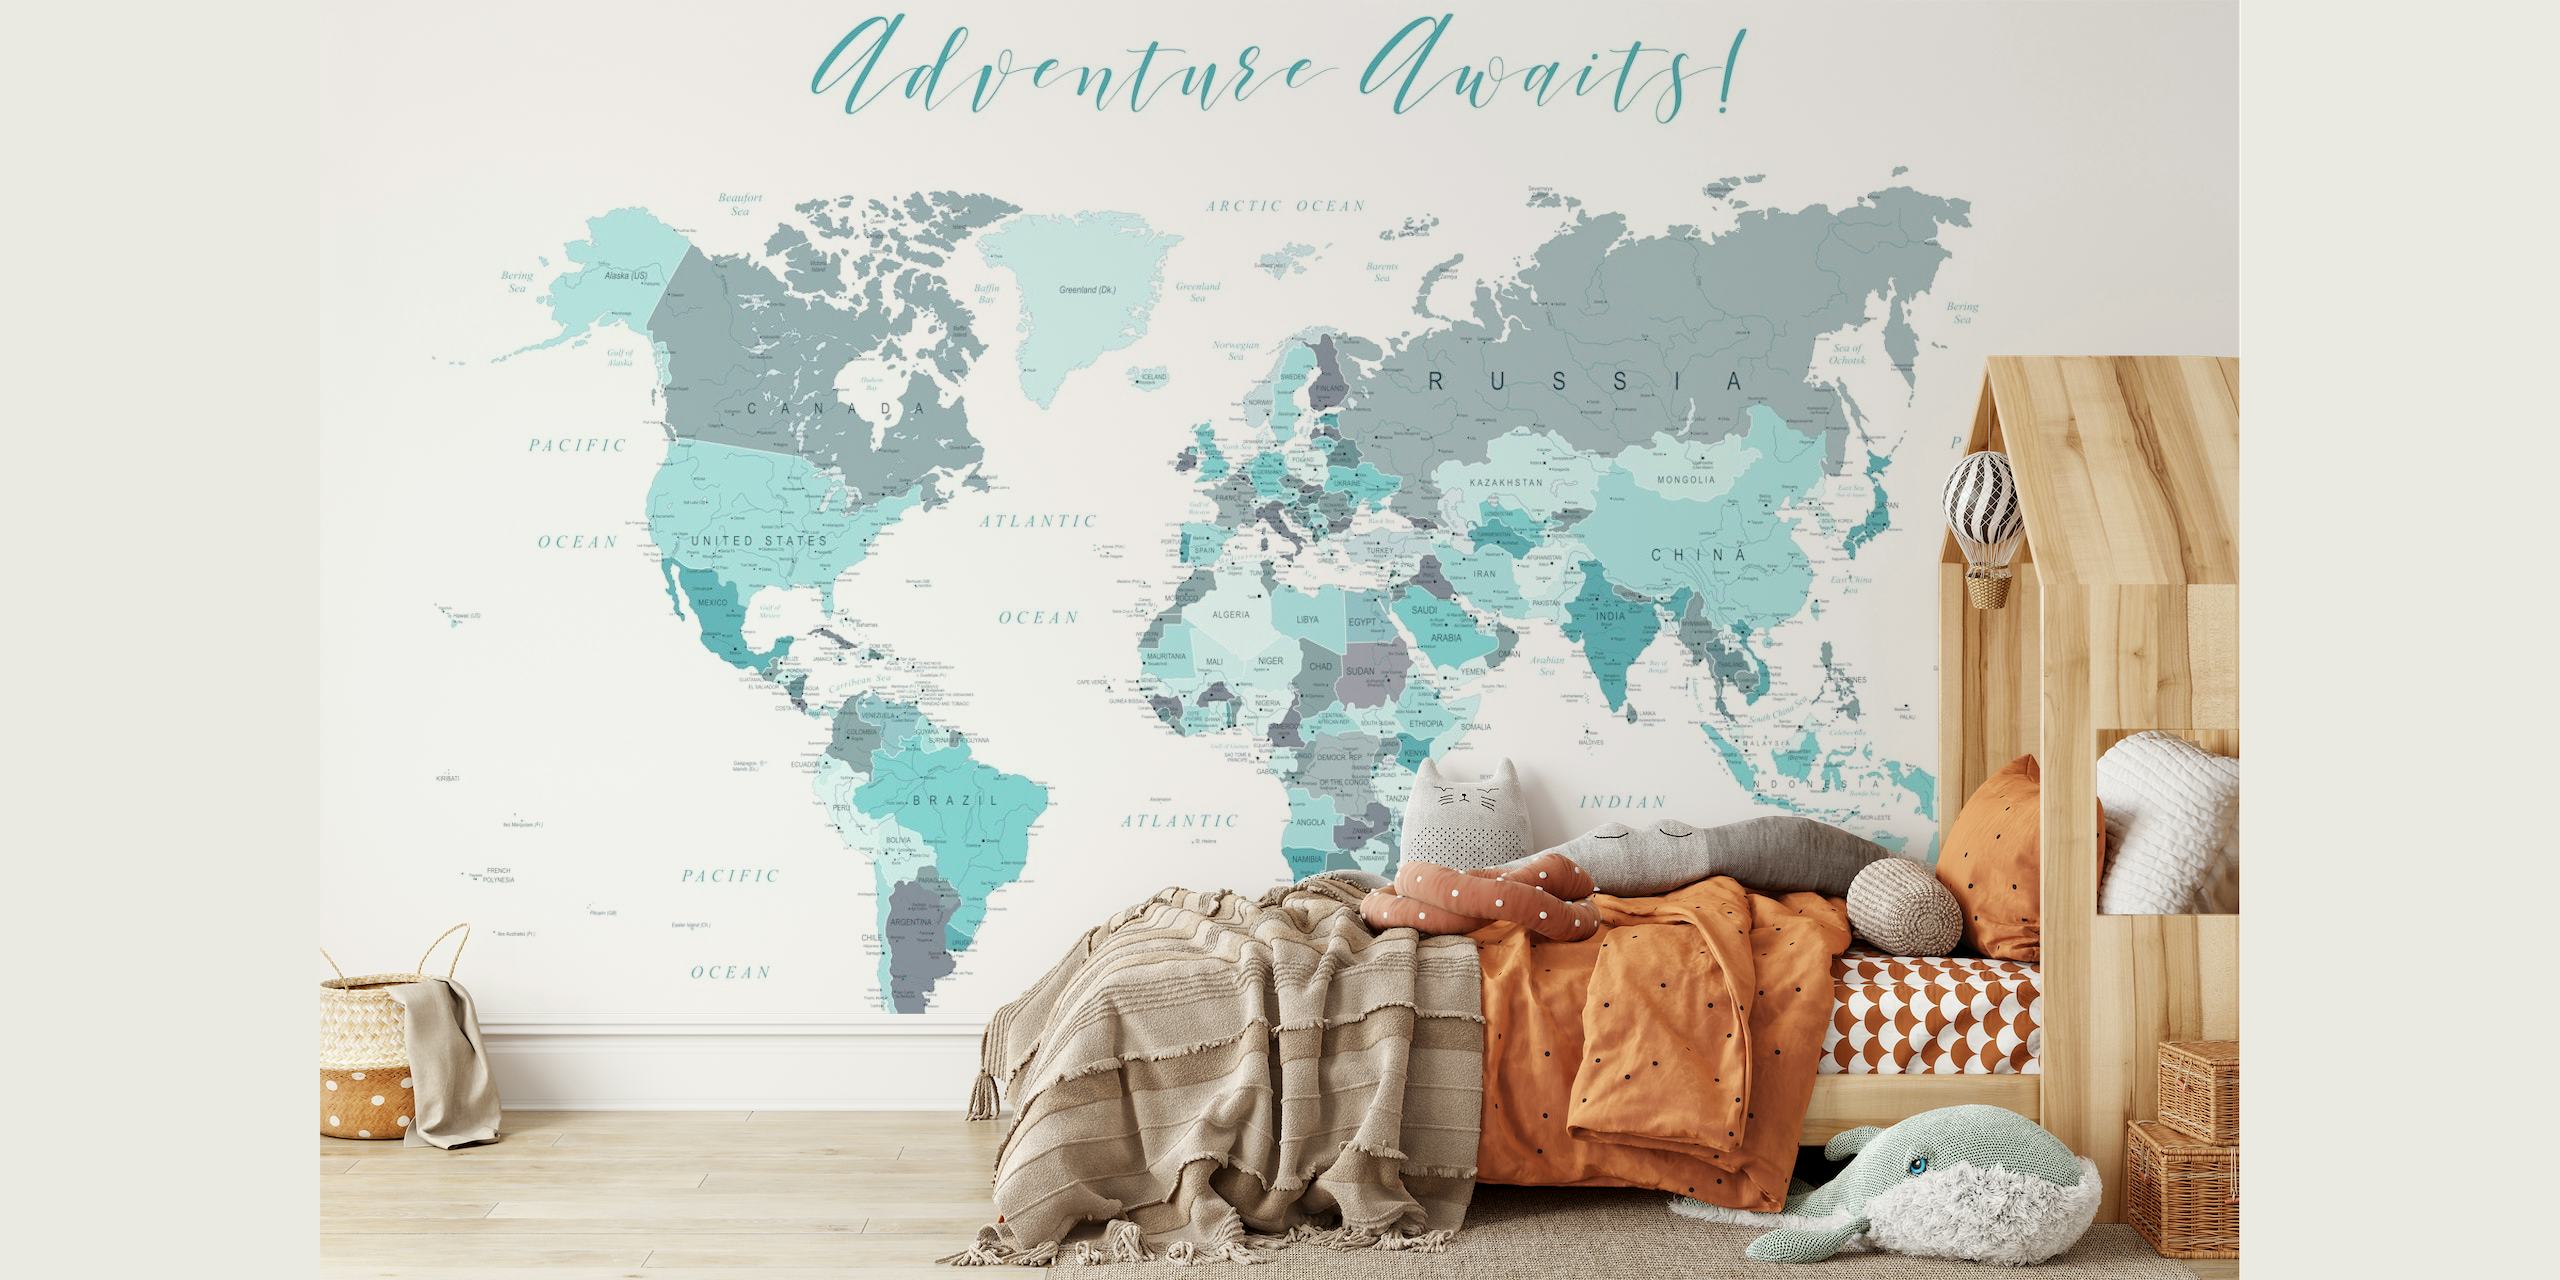 Adventure Awaits Map Teal papel pintado